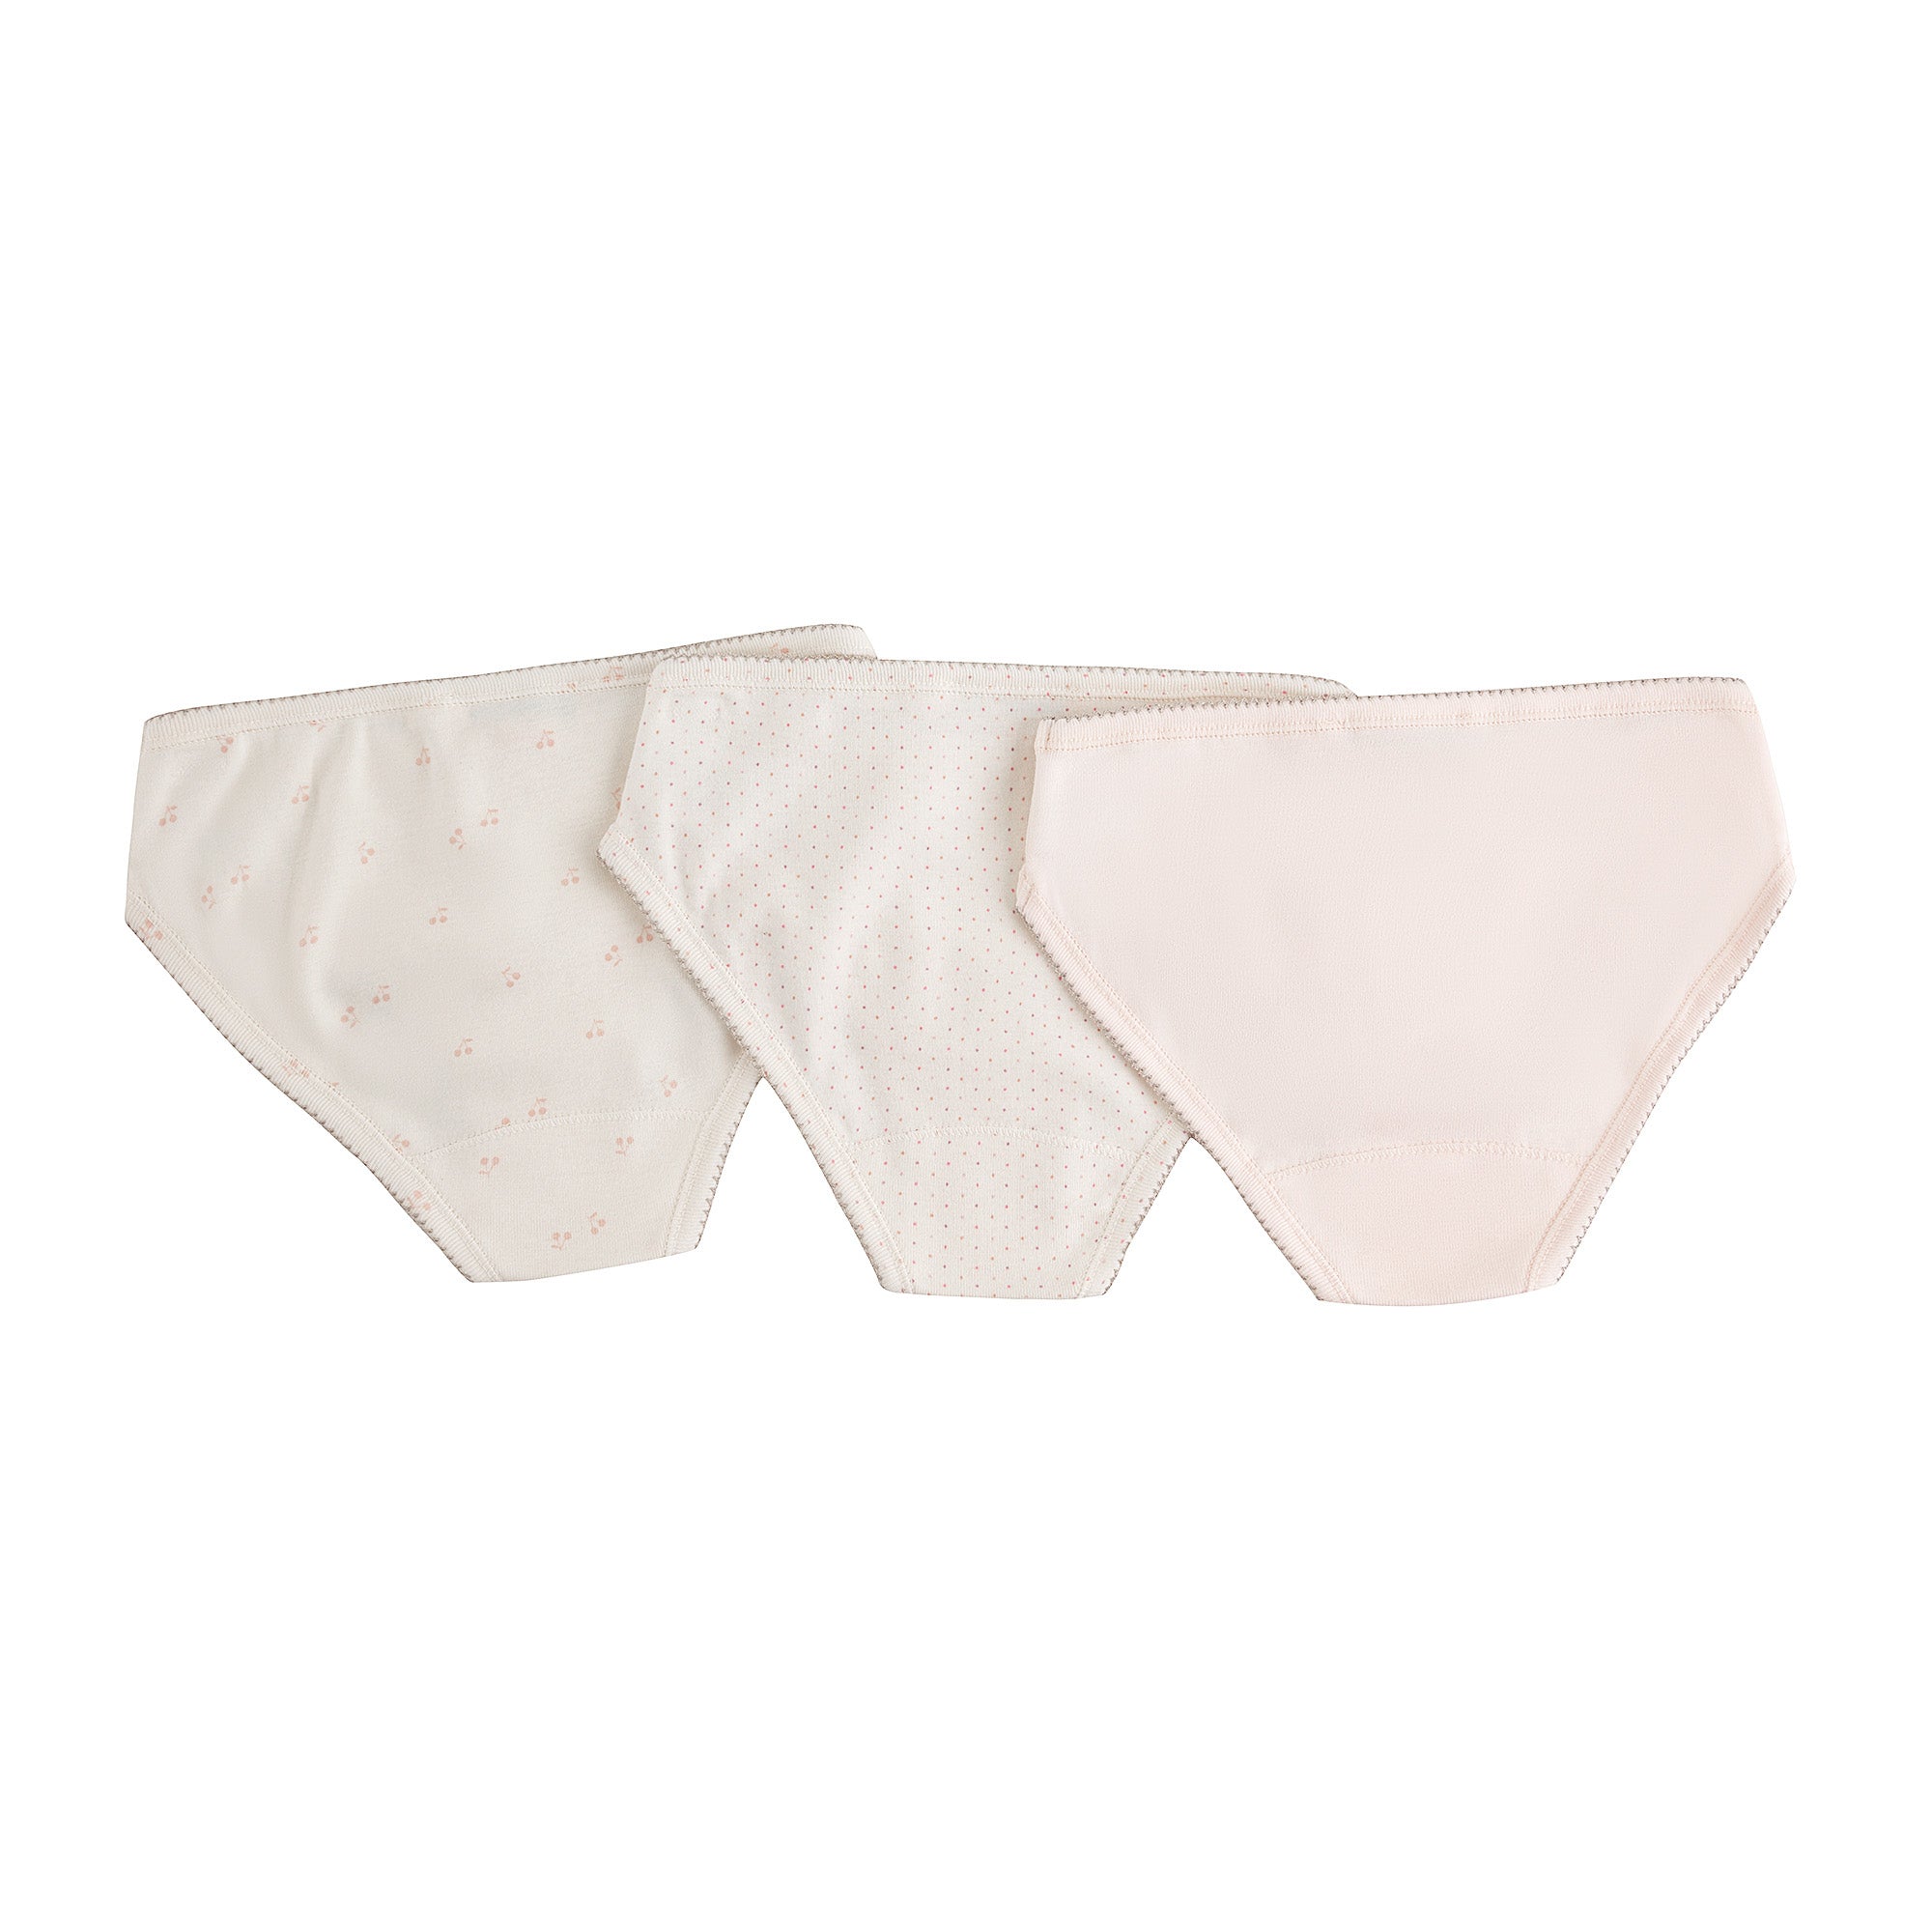 Girls Tricolor Cotton Underwear Set(3 Pack)